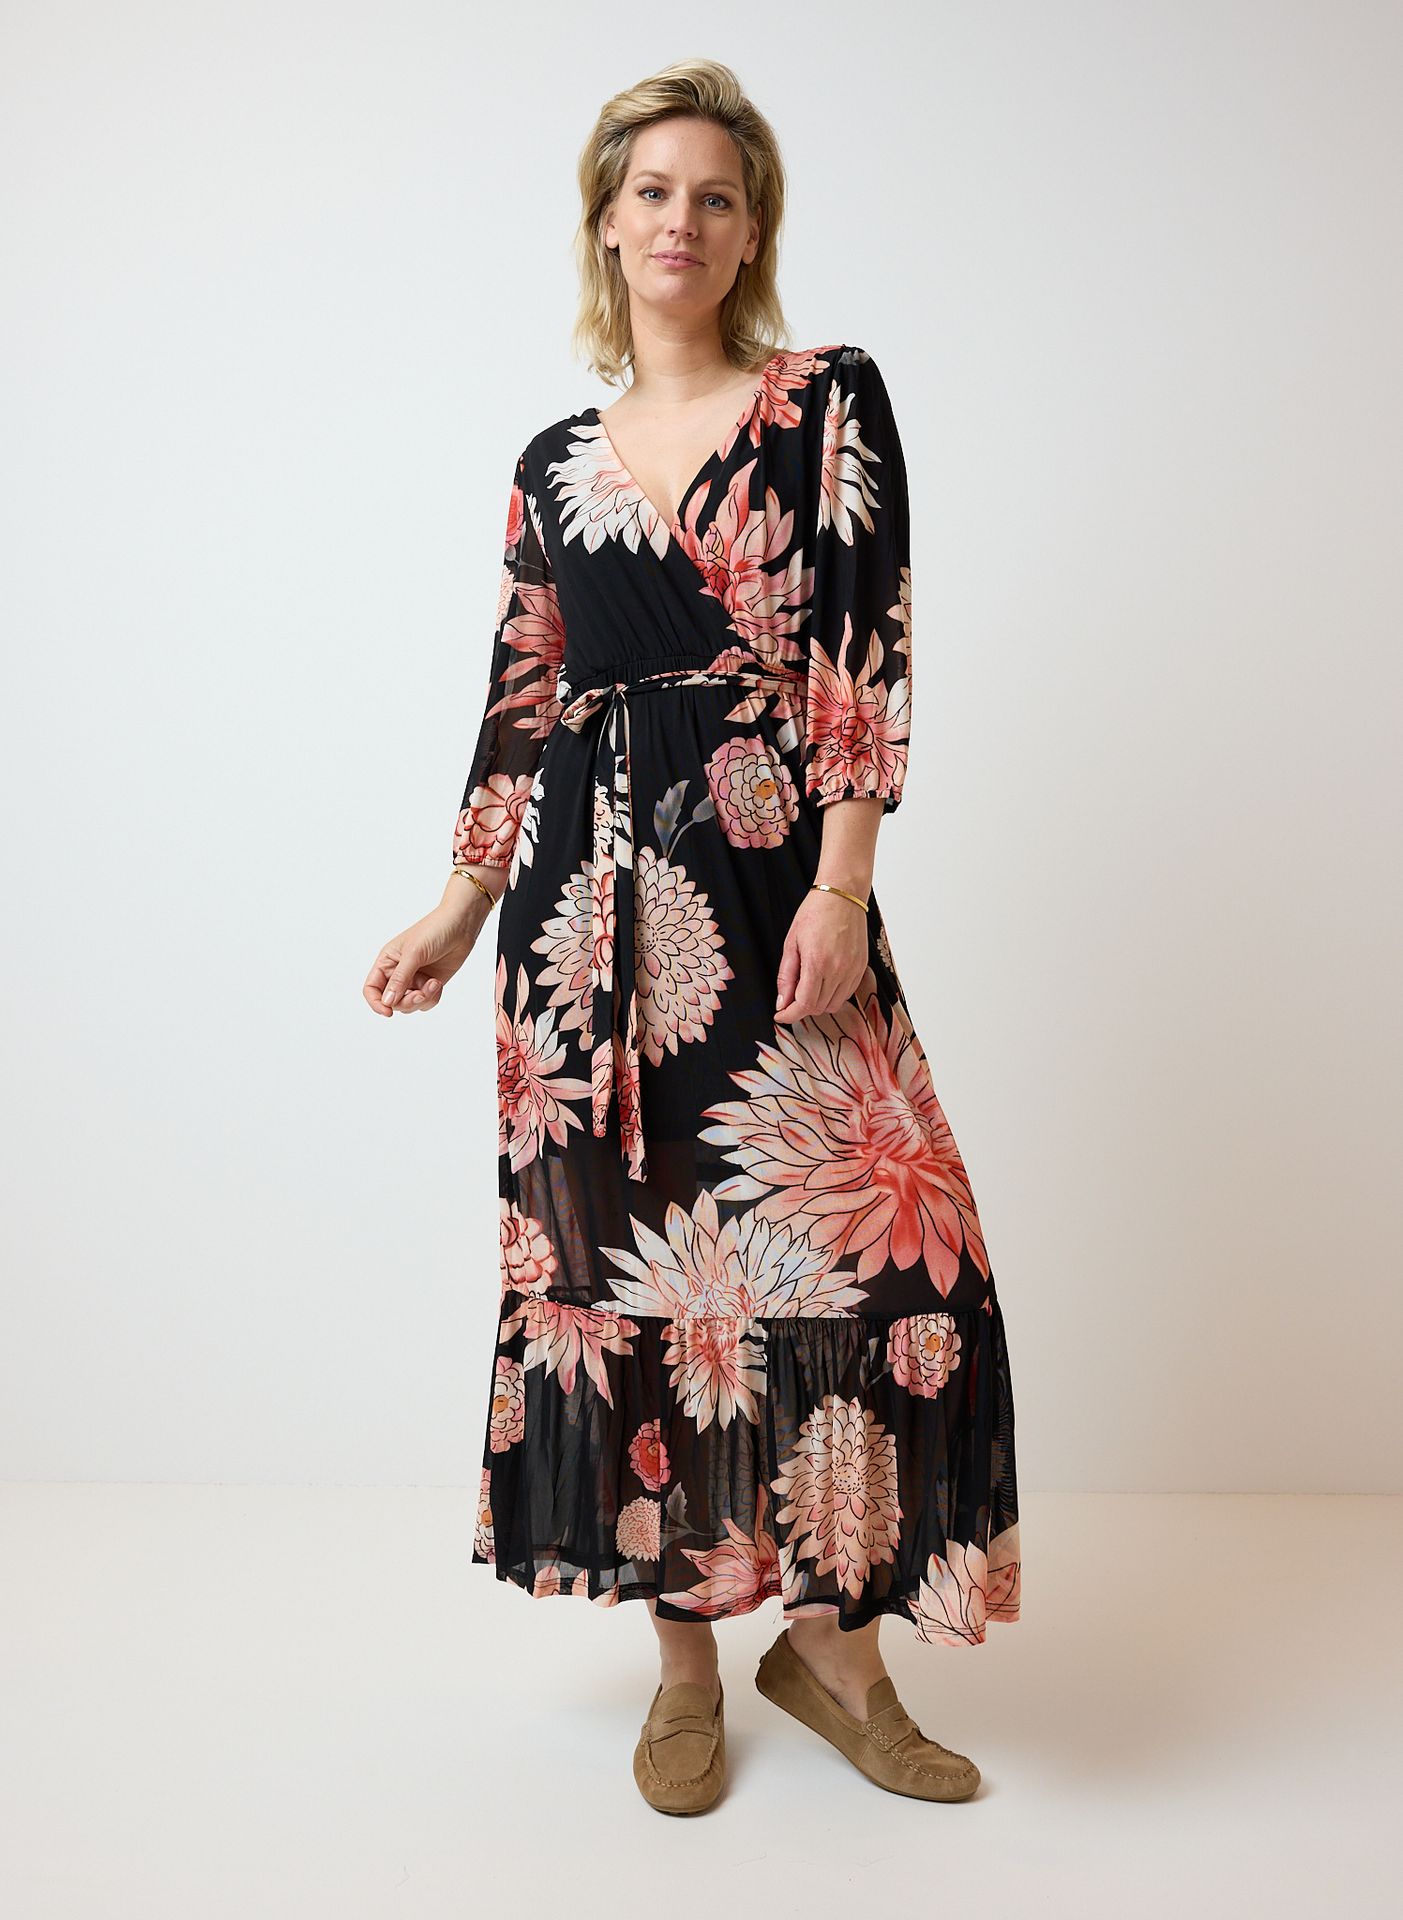 Norah Zwarte maxi jurk bloemenprint black multicolor 214053-020